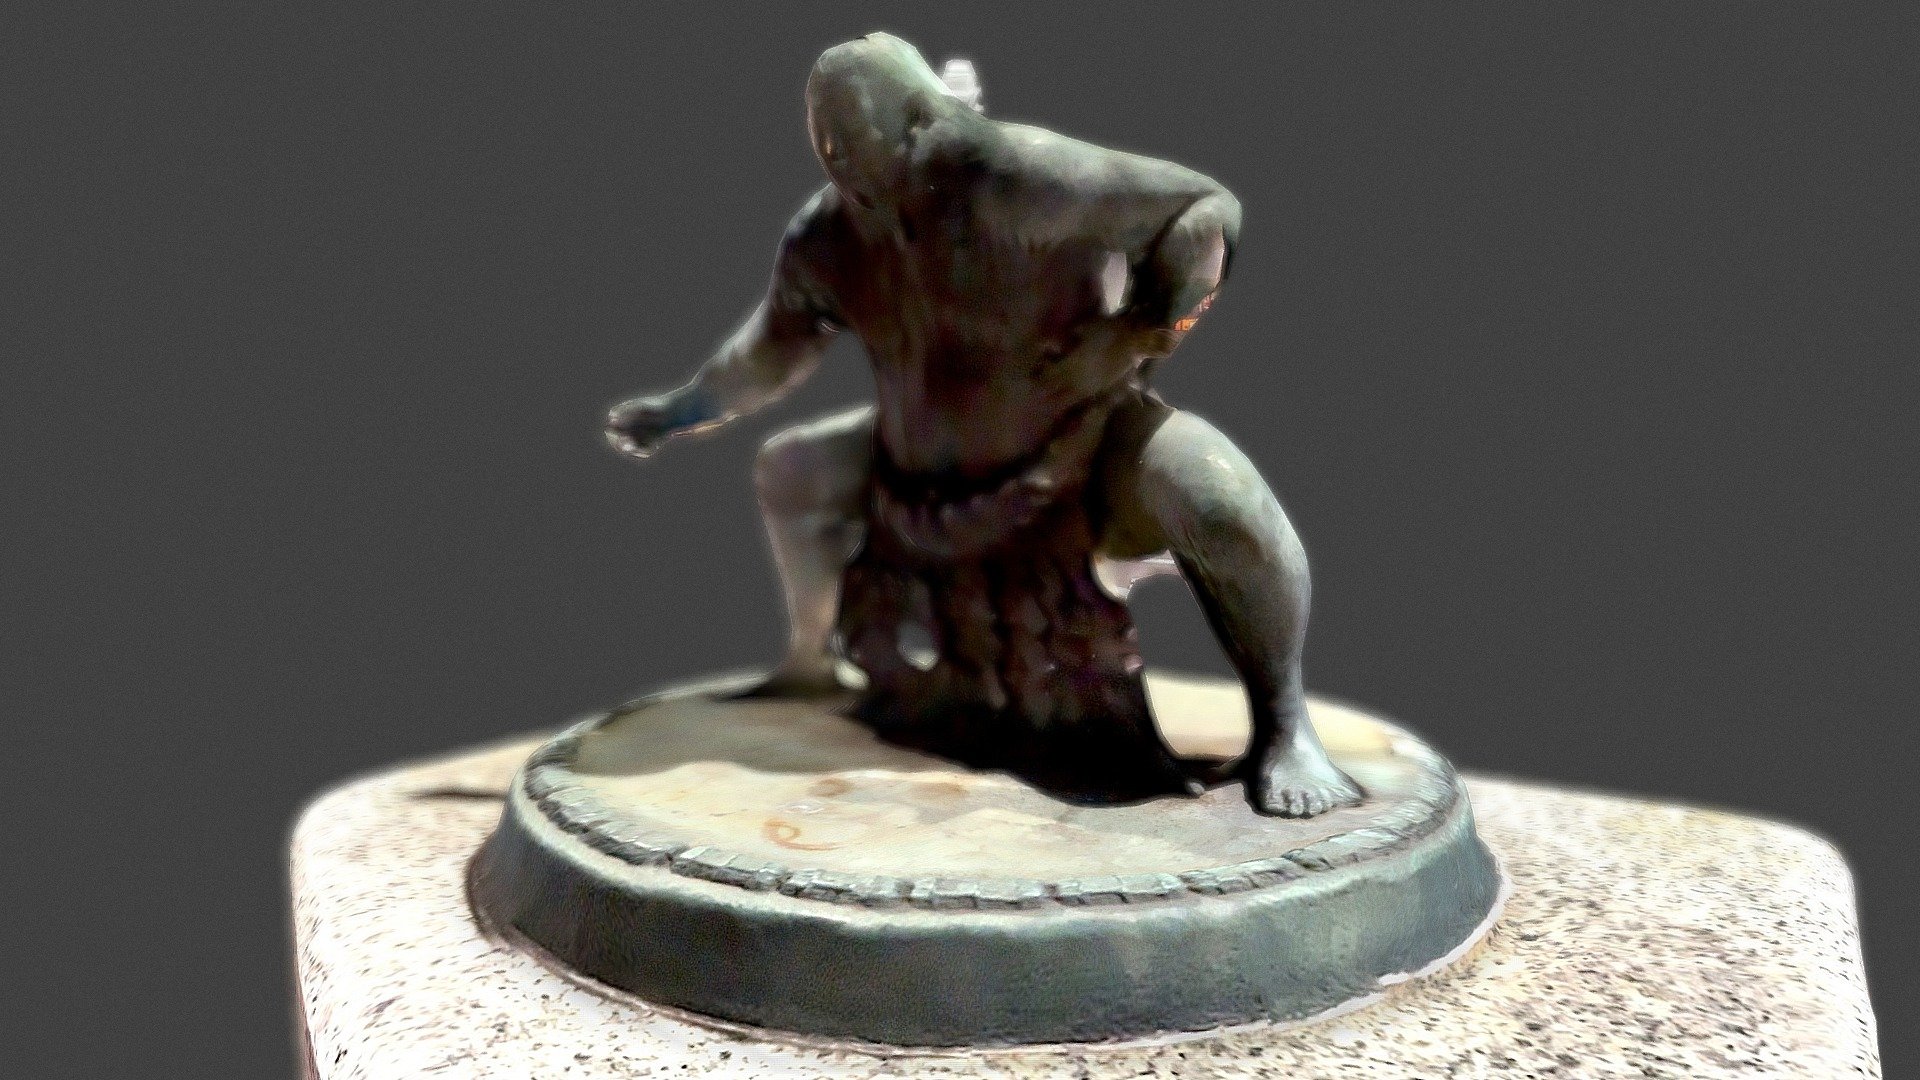 SUMO Wrestler statue1 : 国技館通りの力士像1